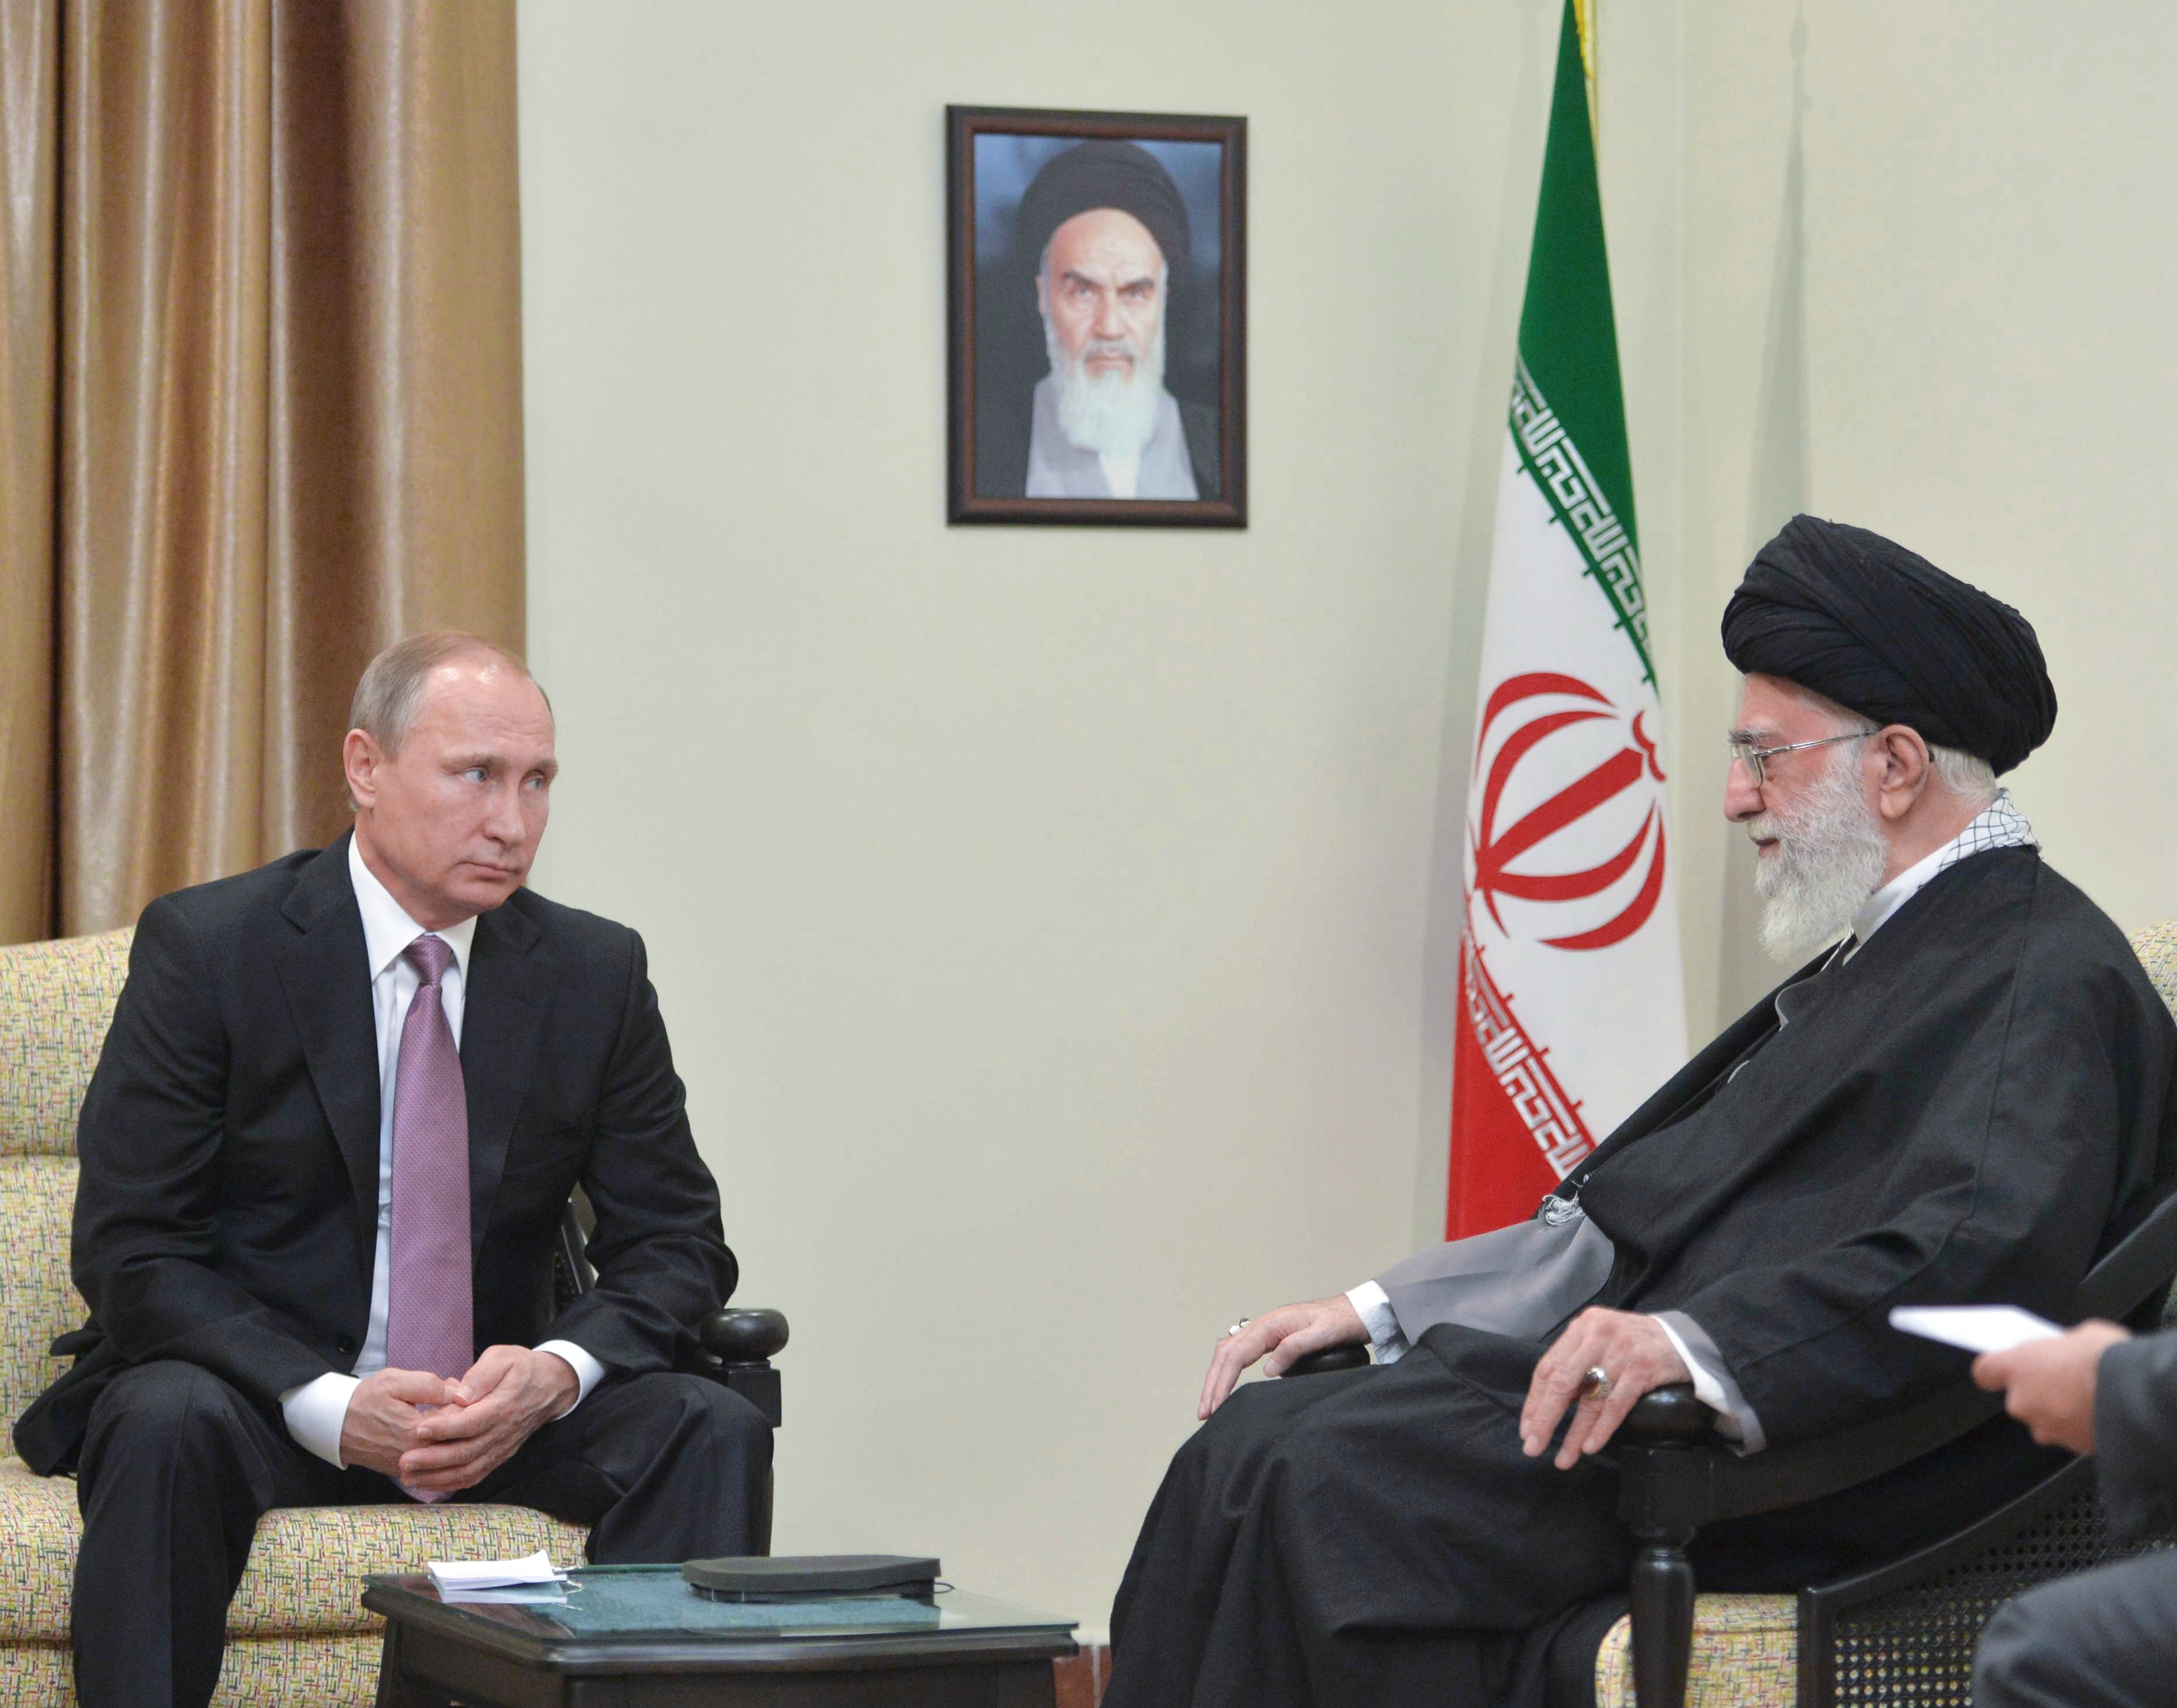 Президент России Владимир Путин и верховный руководитель Исламской Республики Иран Сайед Али Хаменеи во время встречи в Тегеране в 2015 году.&nbsp;
Фото:&nbsp;&copy;&nbsp;РИА Новости/ Алексей Дружинин